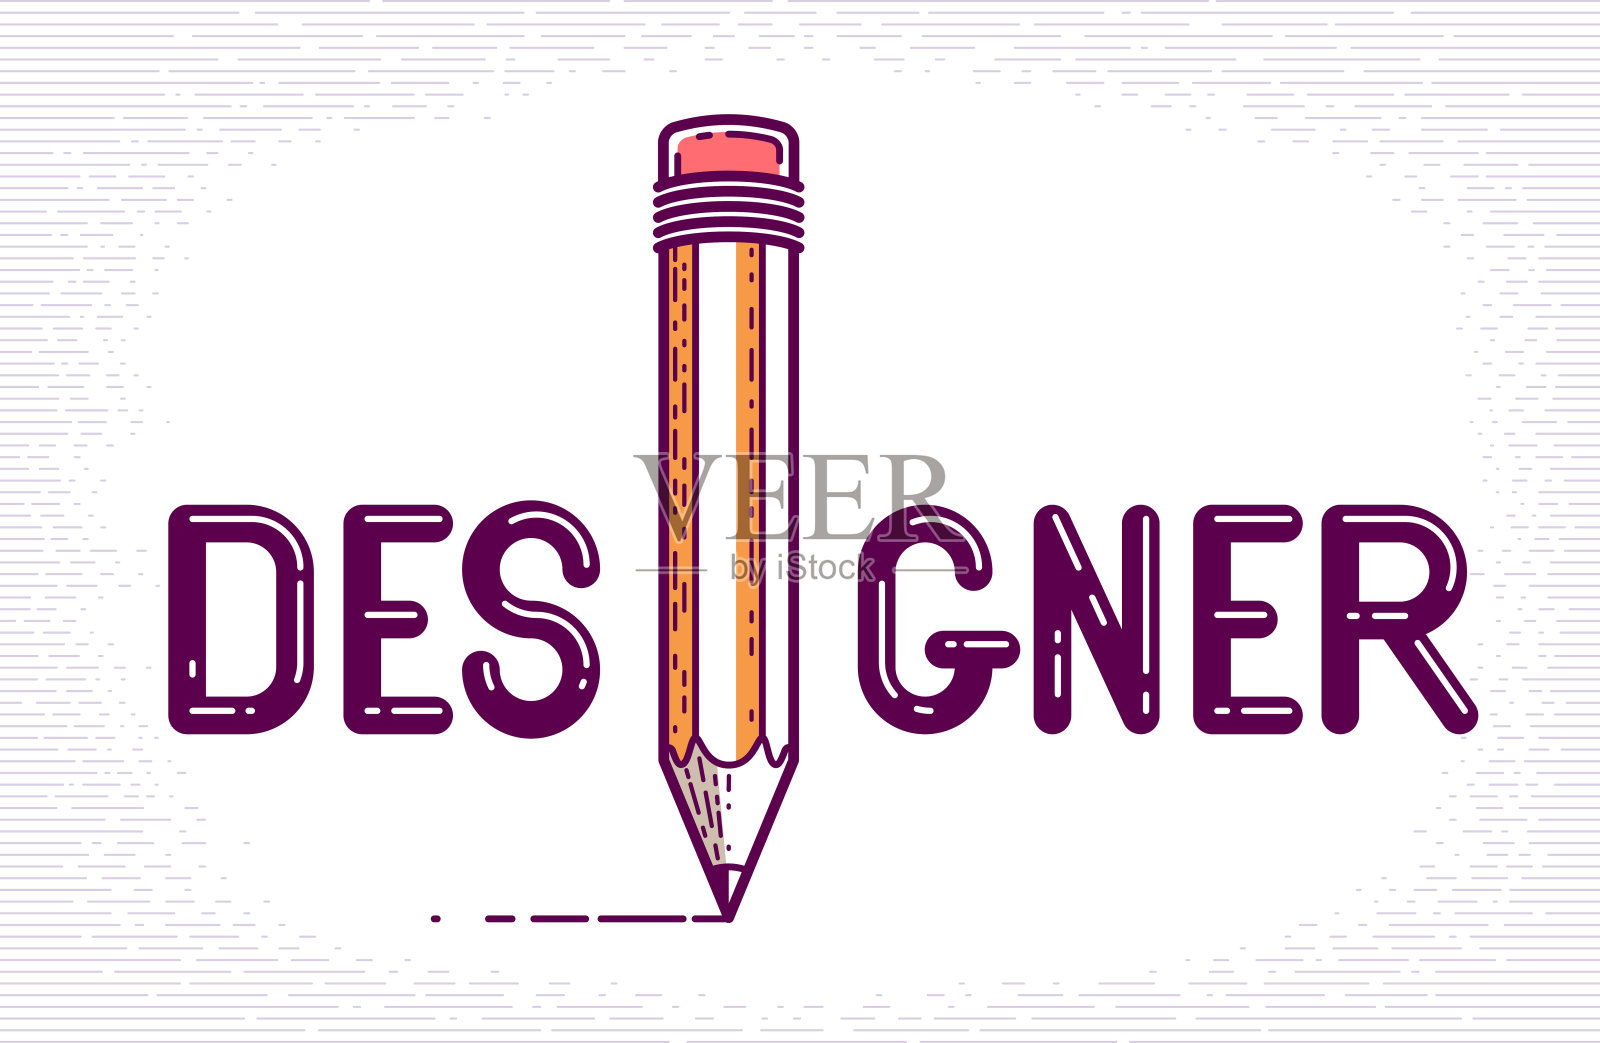 设计师用铅笔字代替字母I，设计专业概念，矢量概念创意标志或海报用特殊字体制成。插画图片素材